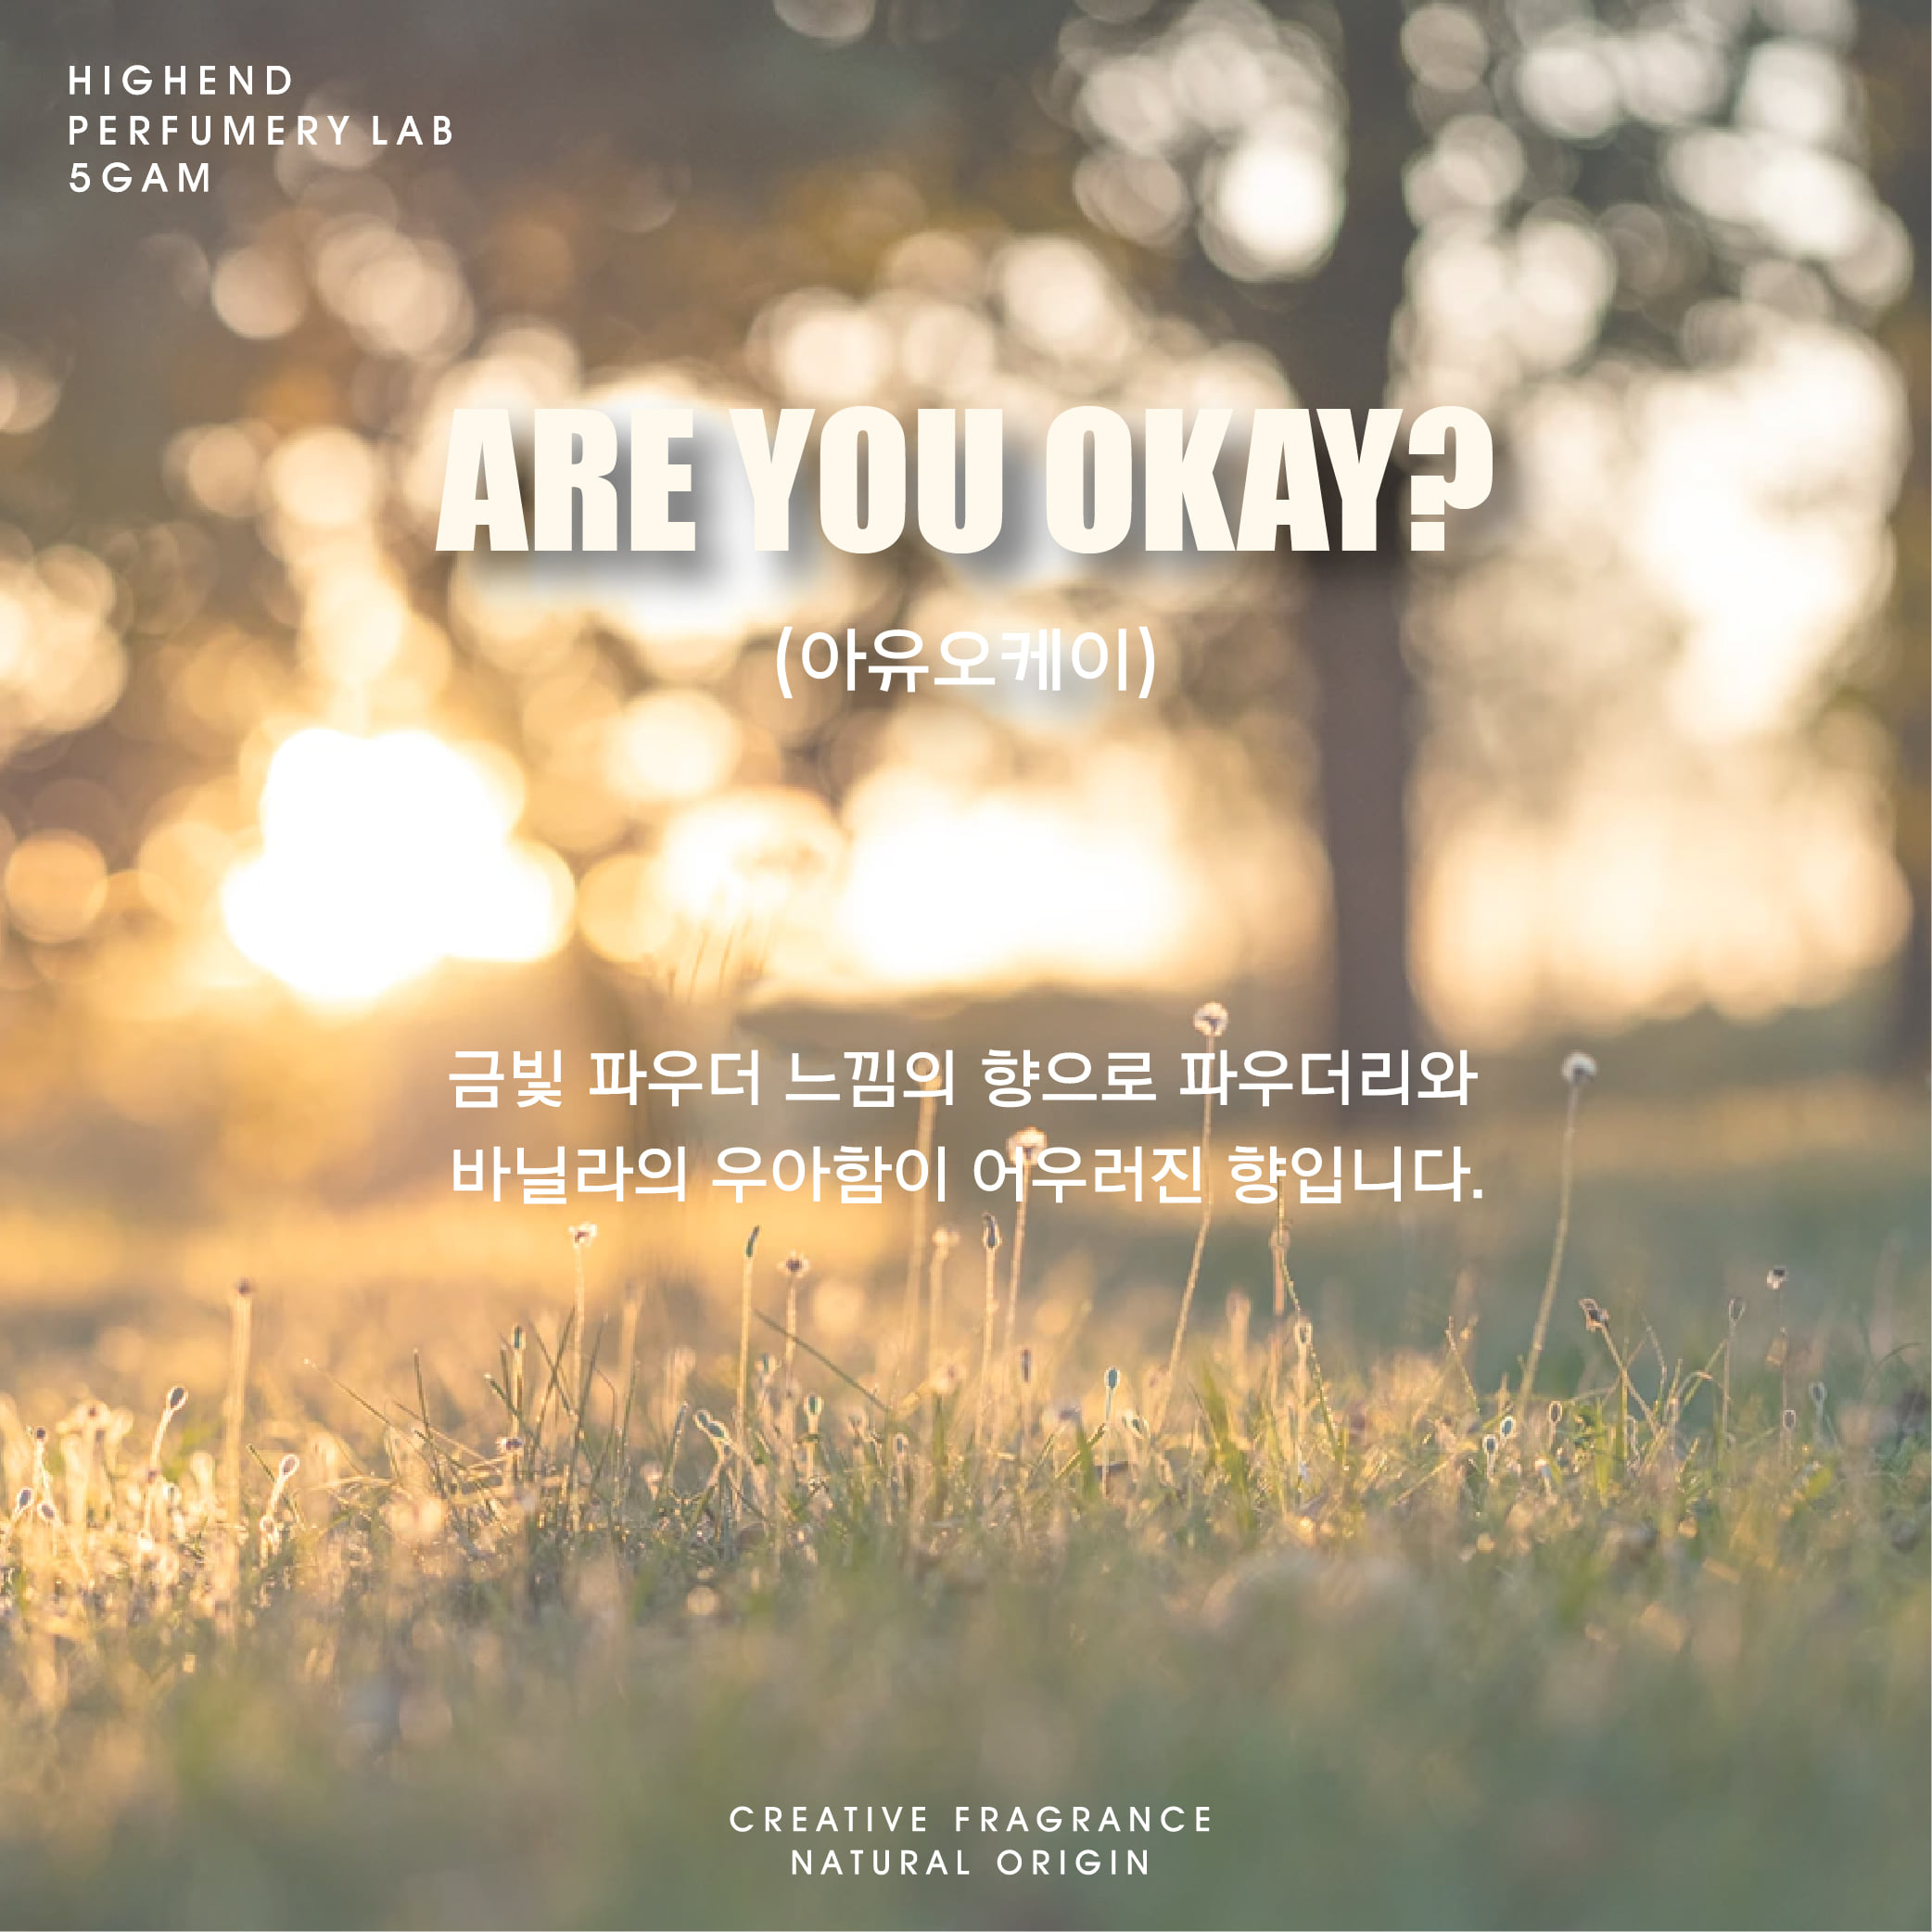 캔들(3oz, 8.5oz, 20oz) - Are you okay?